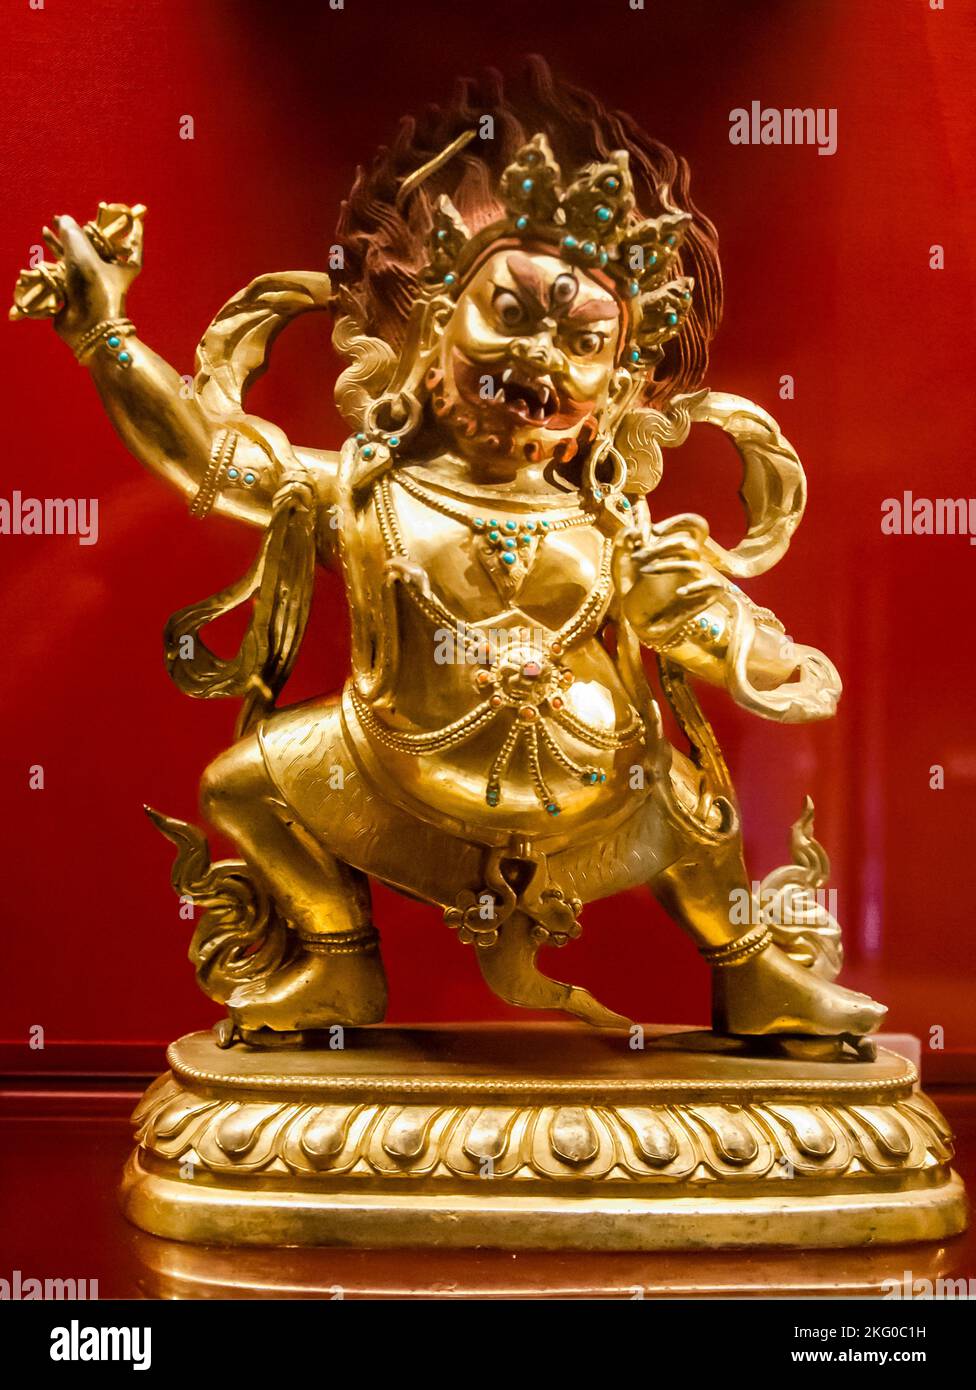 Divinité bouddhiste Vajrapani, bronze doré avec incrustations de pierre, env. 1700-1900. Ashmolean Museum, Université d'Oxford, Angleterre Banque D'Images